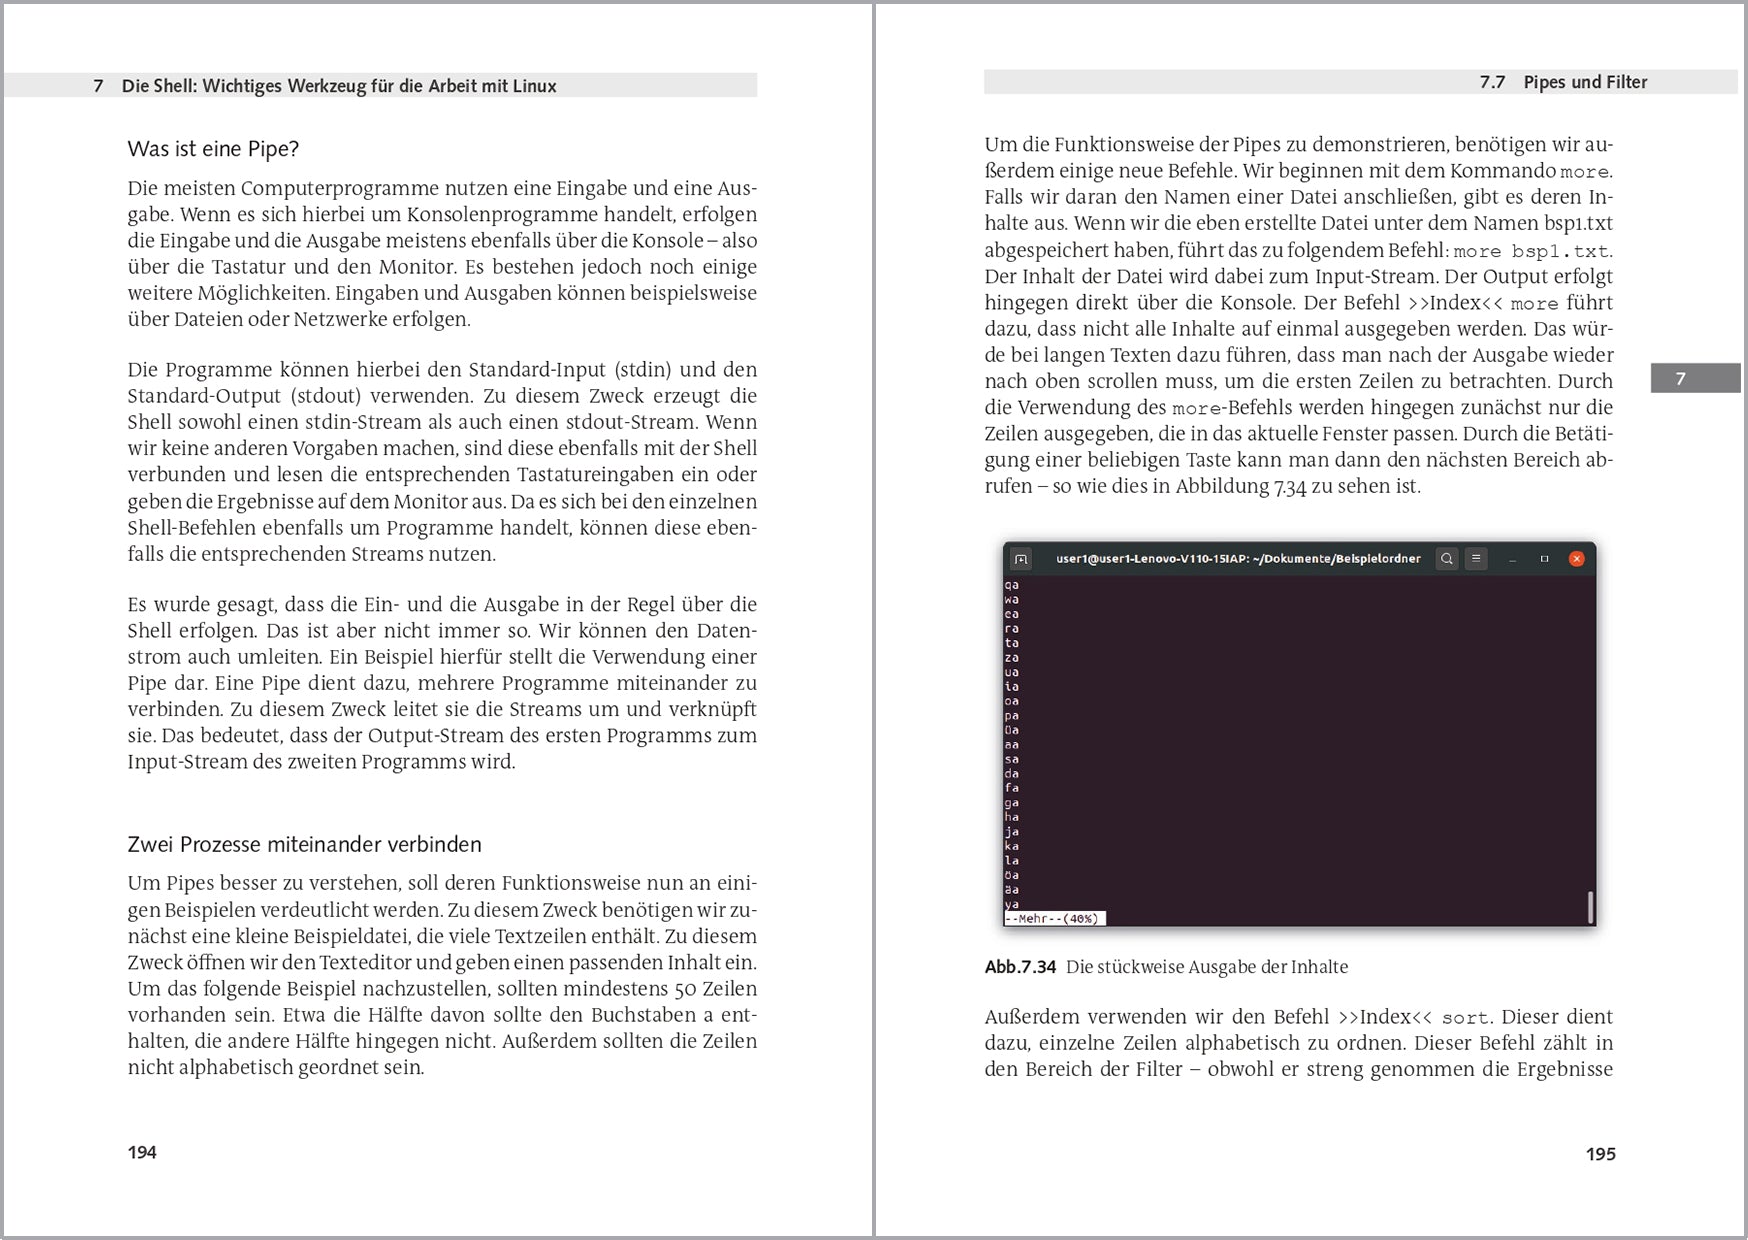 Linux Handbuch für Einsteiger: Der leichte Weg zum Linux-Experten - AZ-Delivery